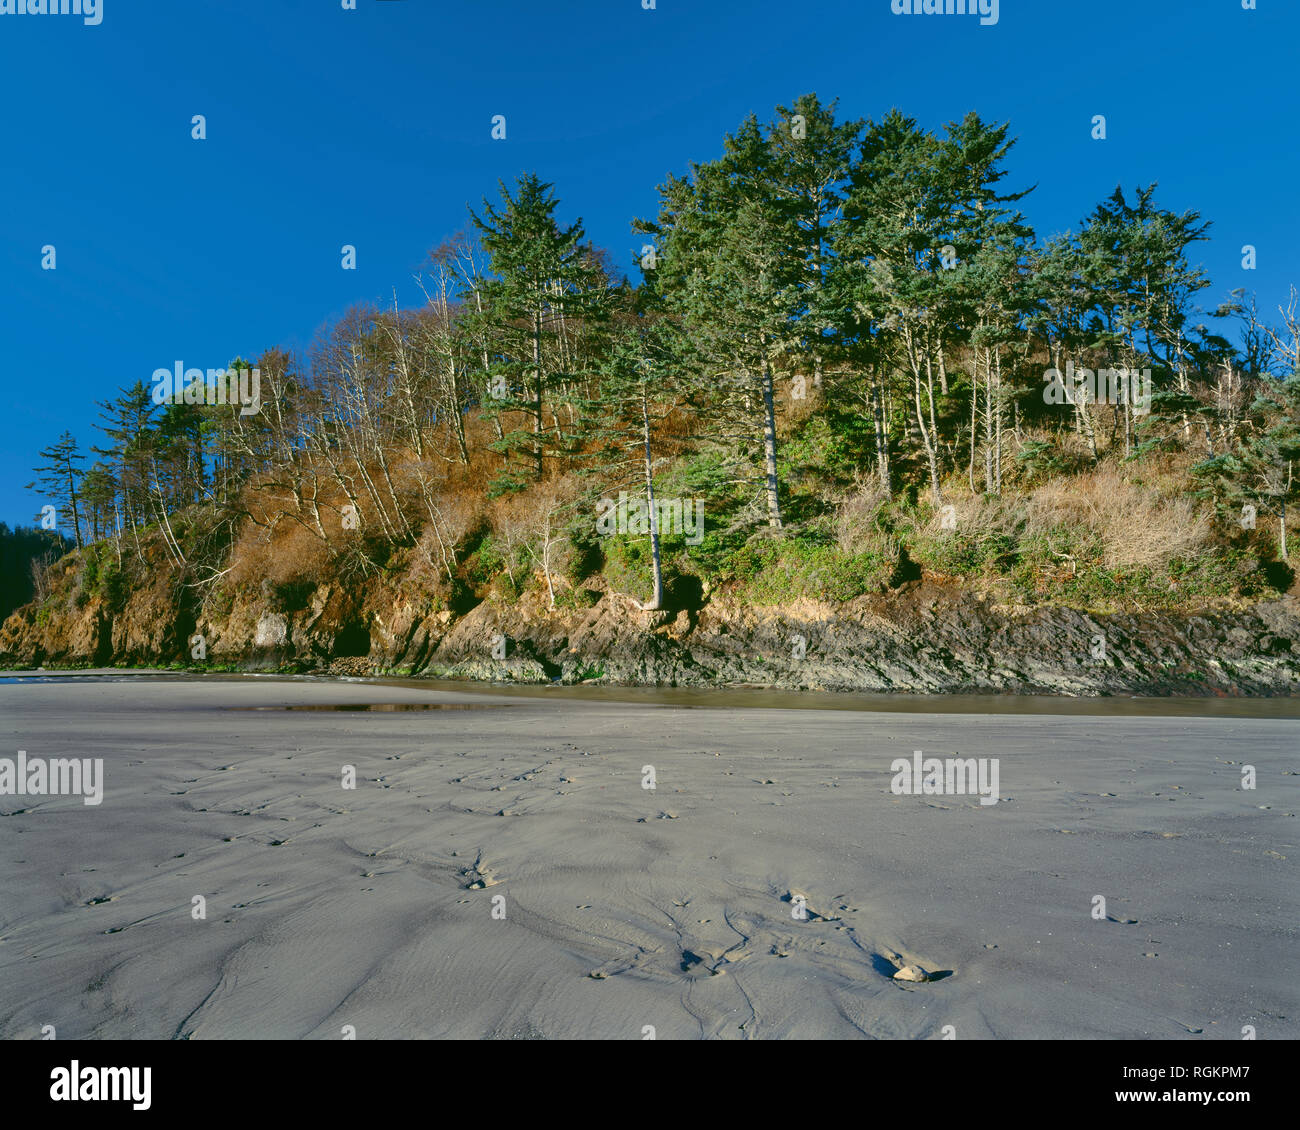 USA, Oregon, Neskowin Beach Wayside, Proposal Rock rises above patterned beach sand. Stock Photo